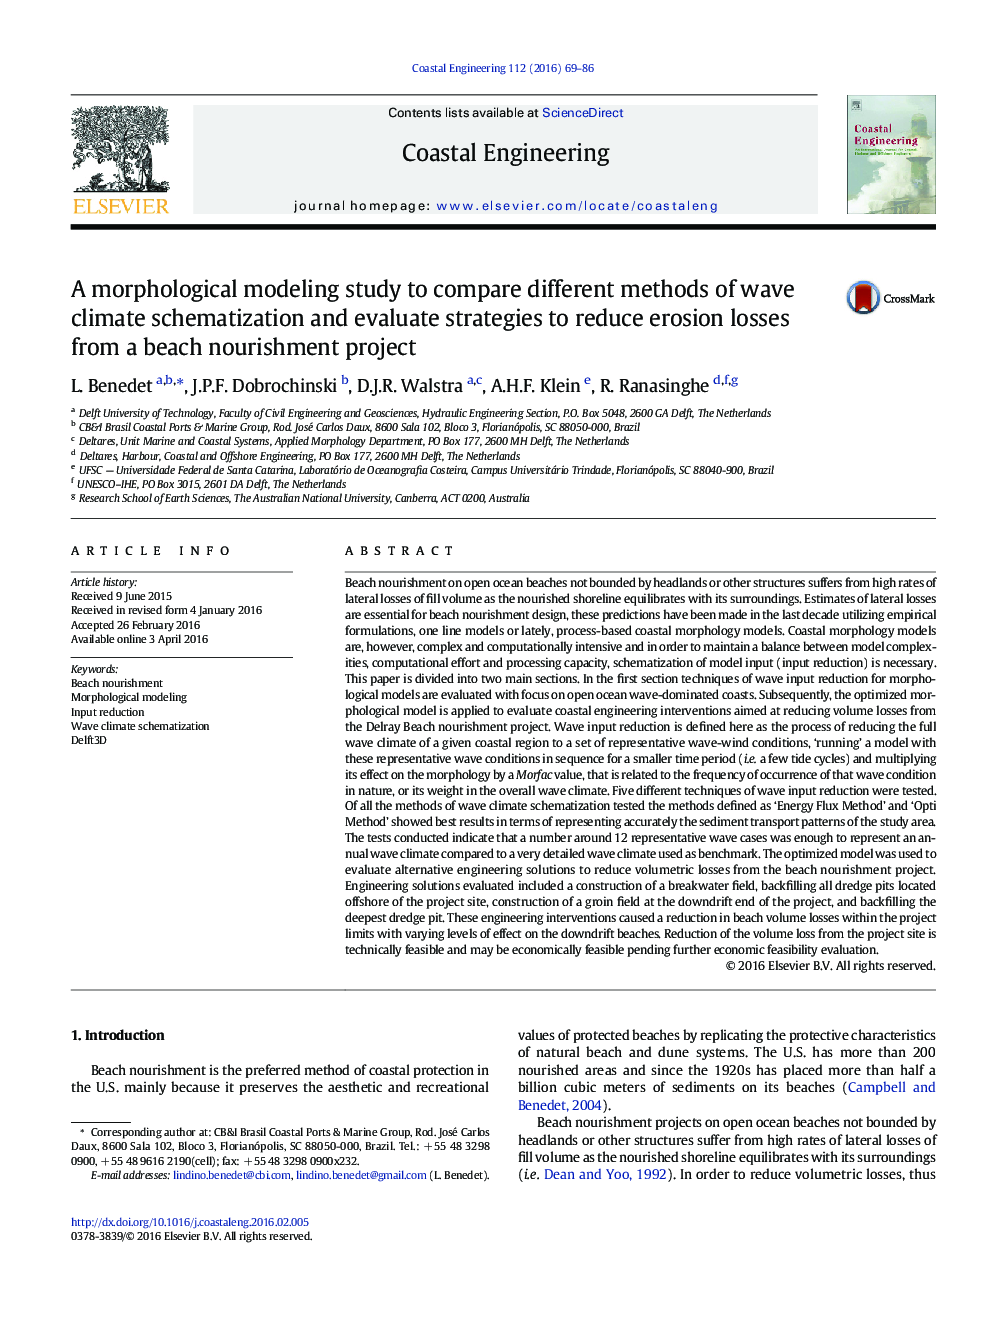 مطالعه ی مدل یابی مورفولوژیکی برای مقایسه روش های مختلف شبیه سازی آب و هوا و ارزیابی استراتژی های کاهش تلفات فرسایش از یک طرح تغذیه ساحلی 